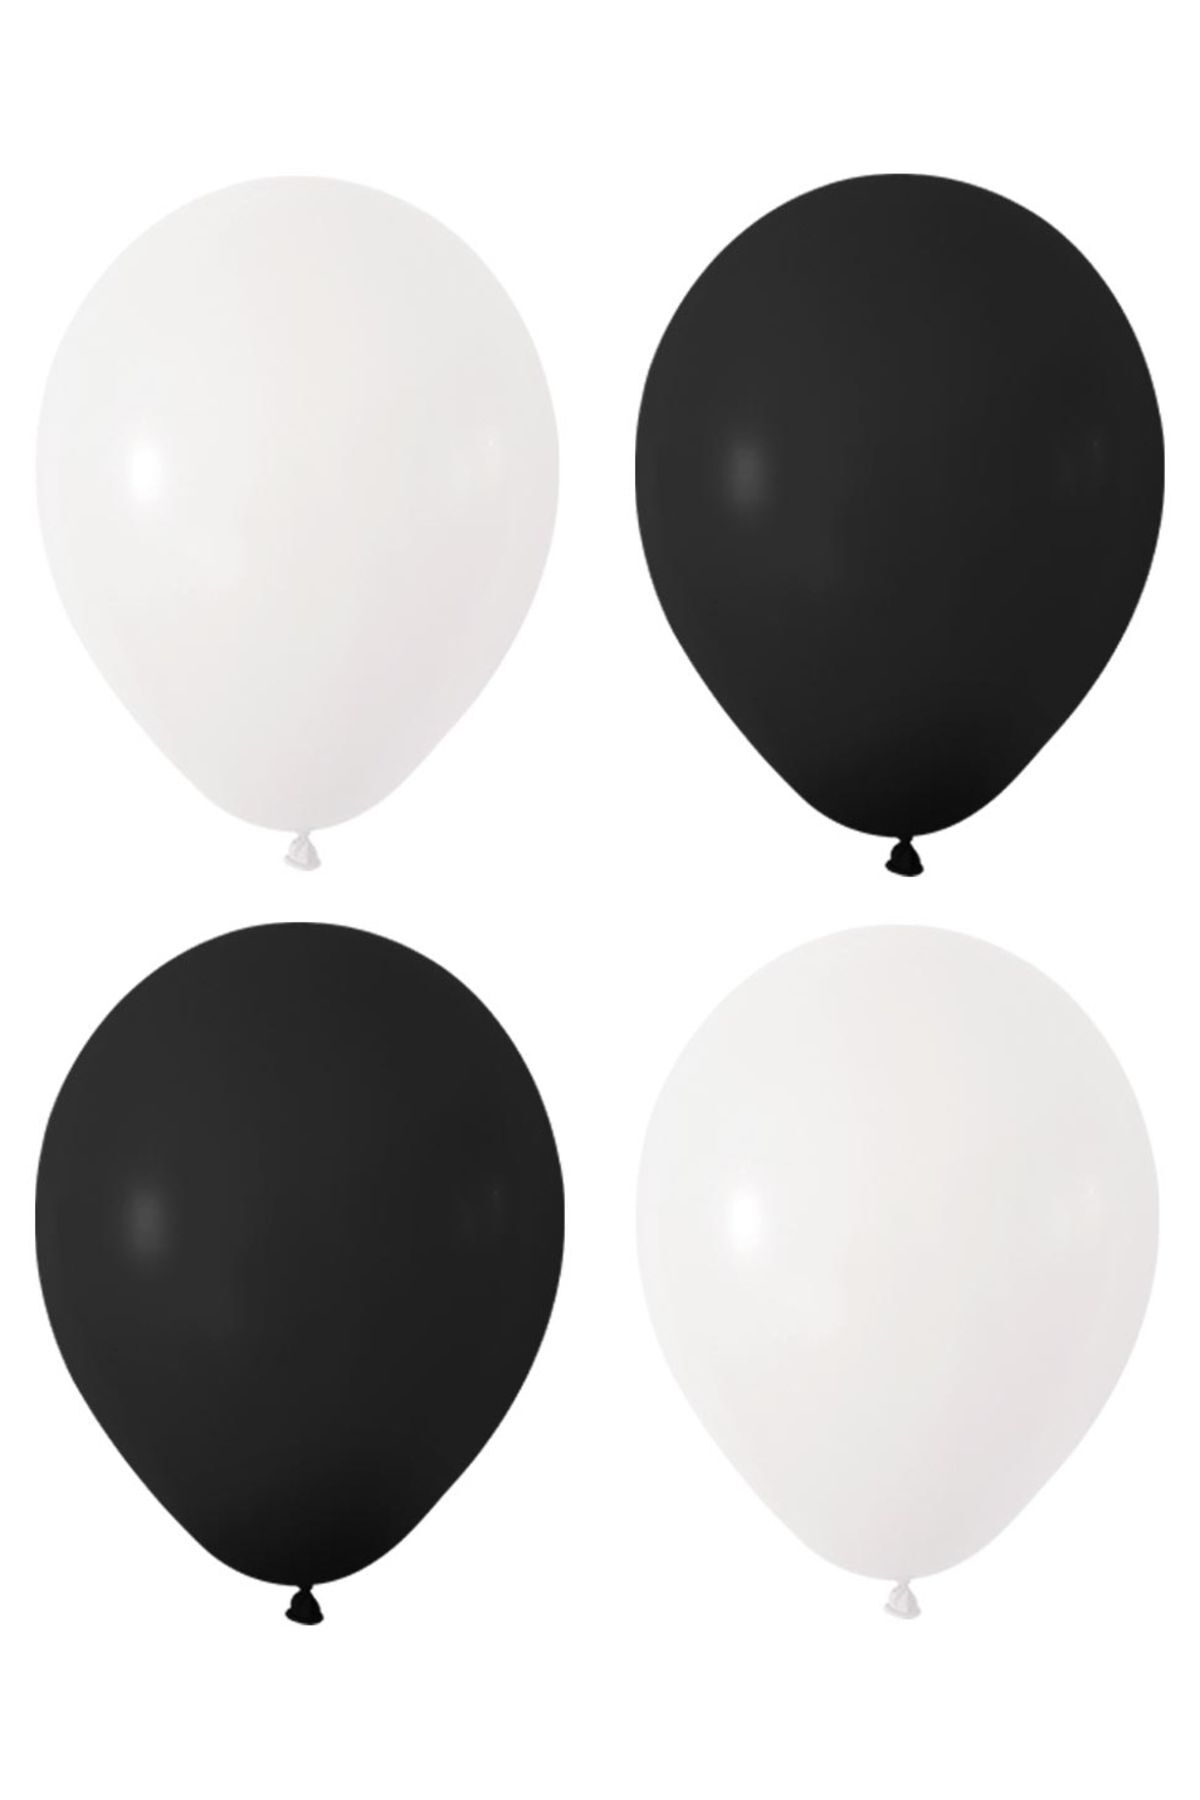 HKNYS Siyah Beyaz Renk Pastel Lateks Balon 30 Adet